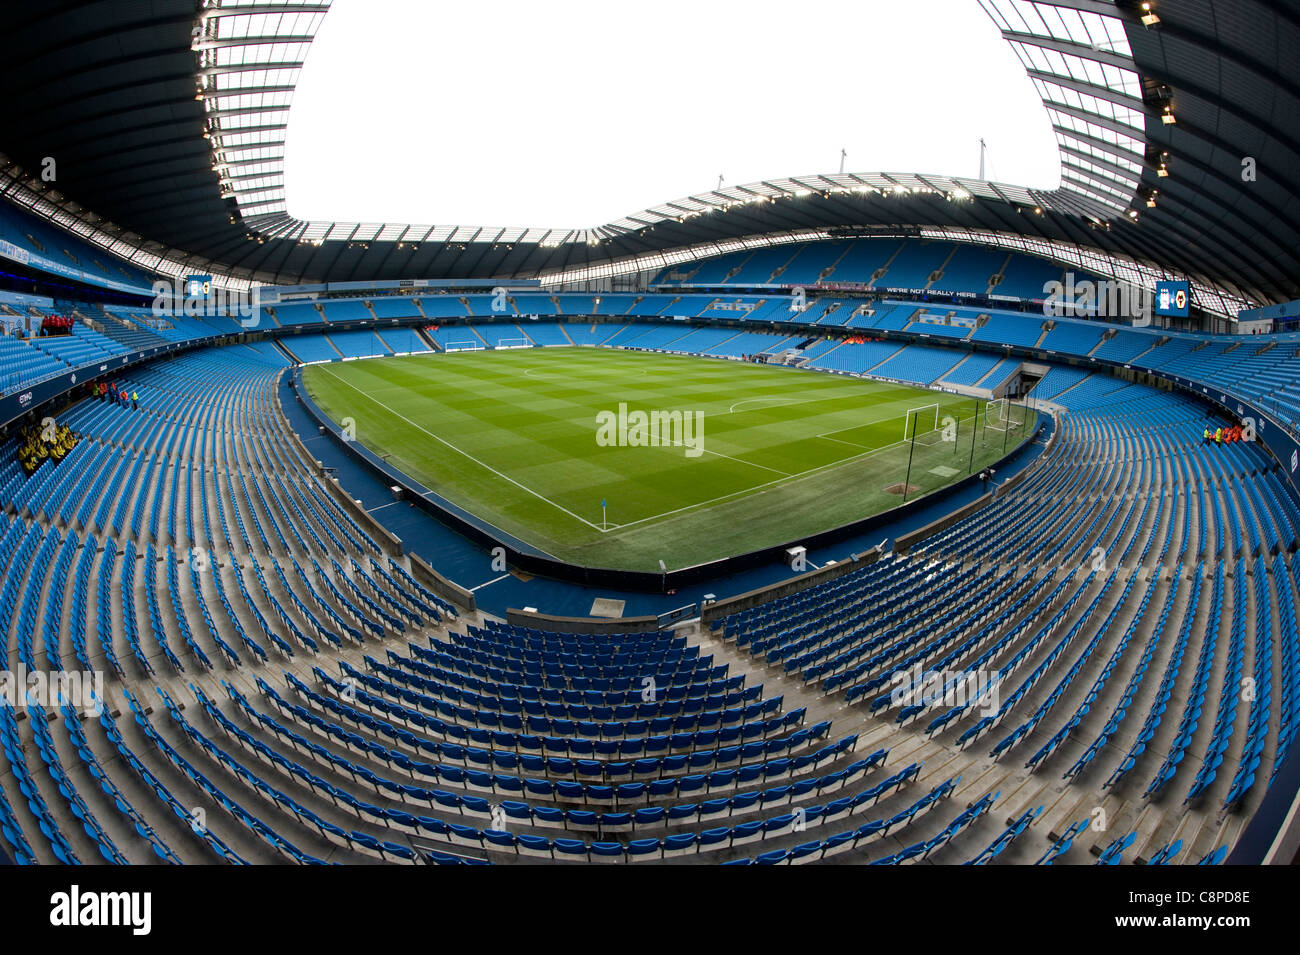 El City of Manchester Stadium, también conocido como el estadio Etihad o Eastlands, el estadio del club de fútbol Manchester City Foto de stock